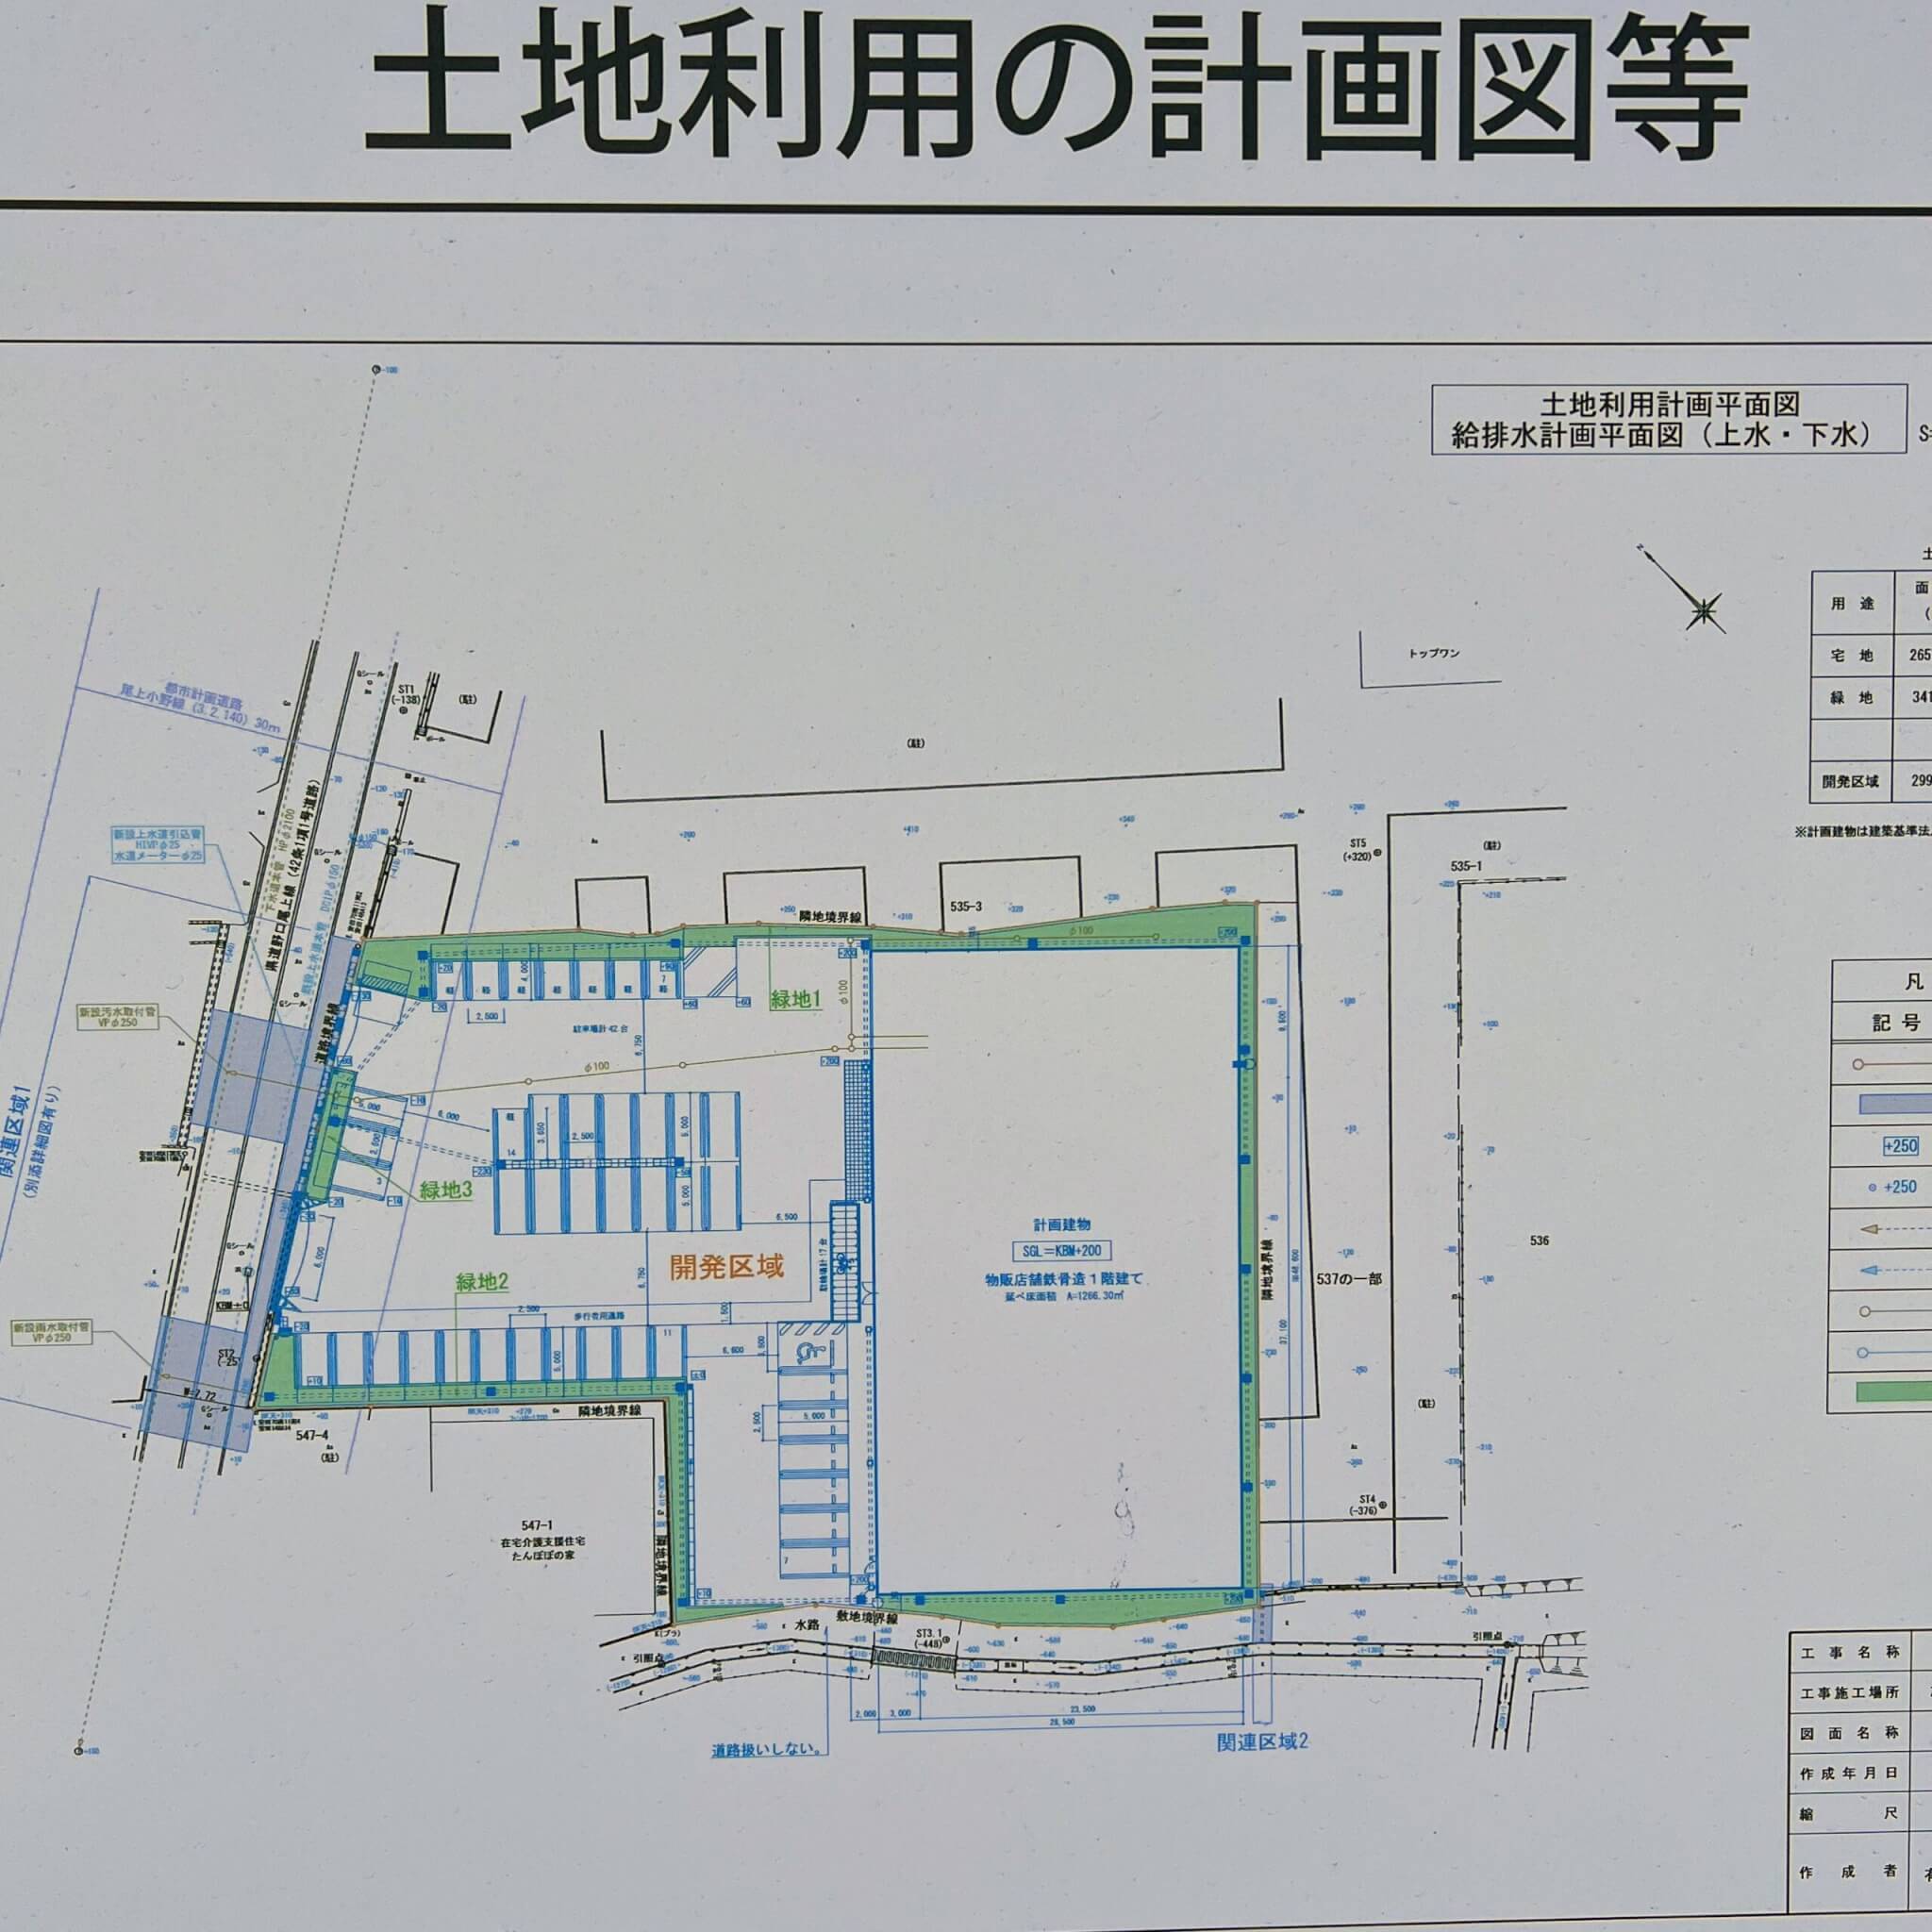 ダイレックス加古川安田店の土地利用の計画図